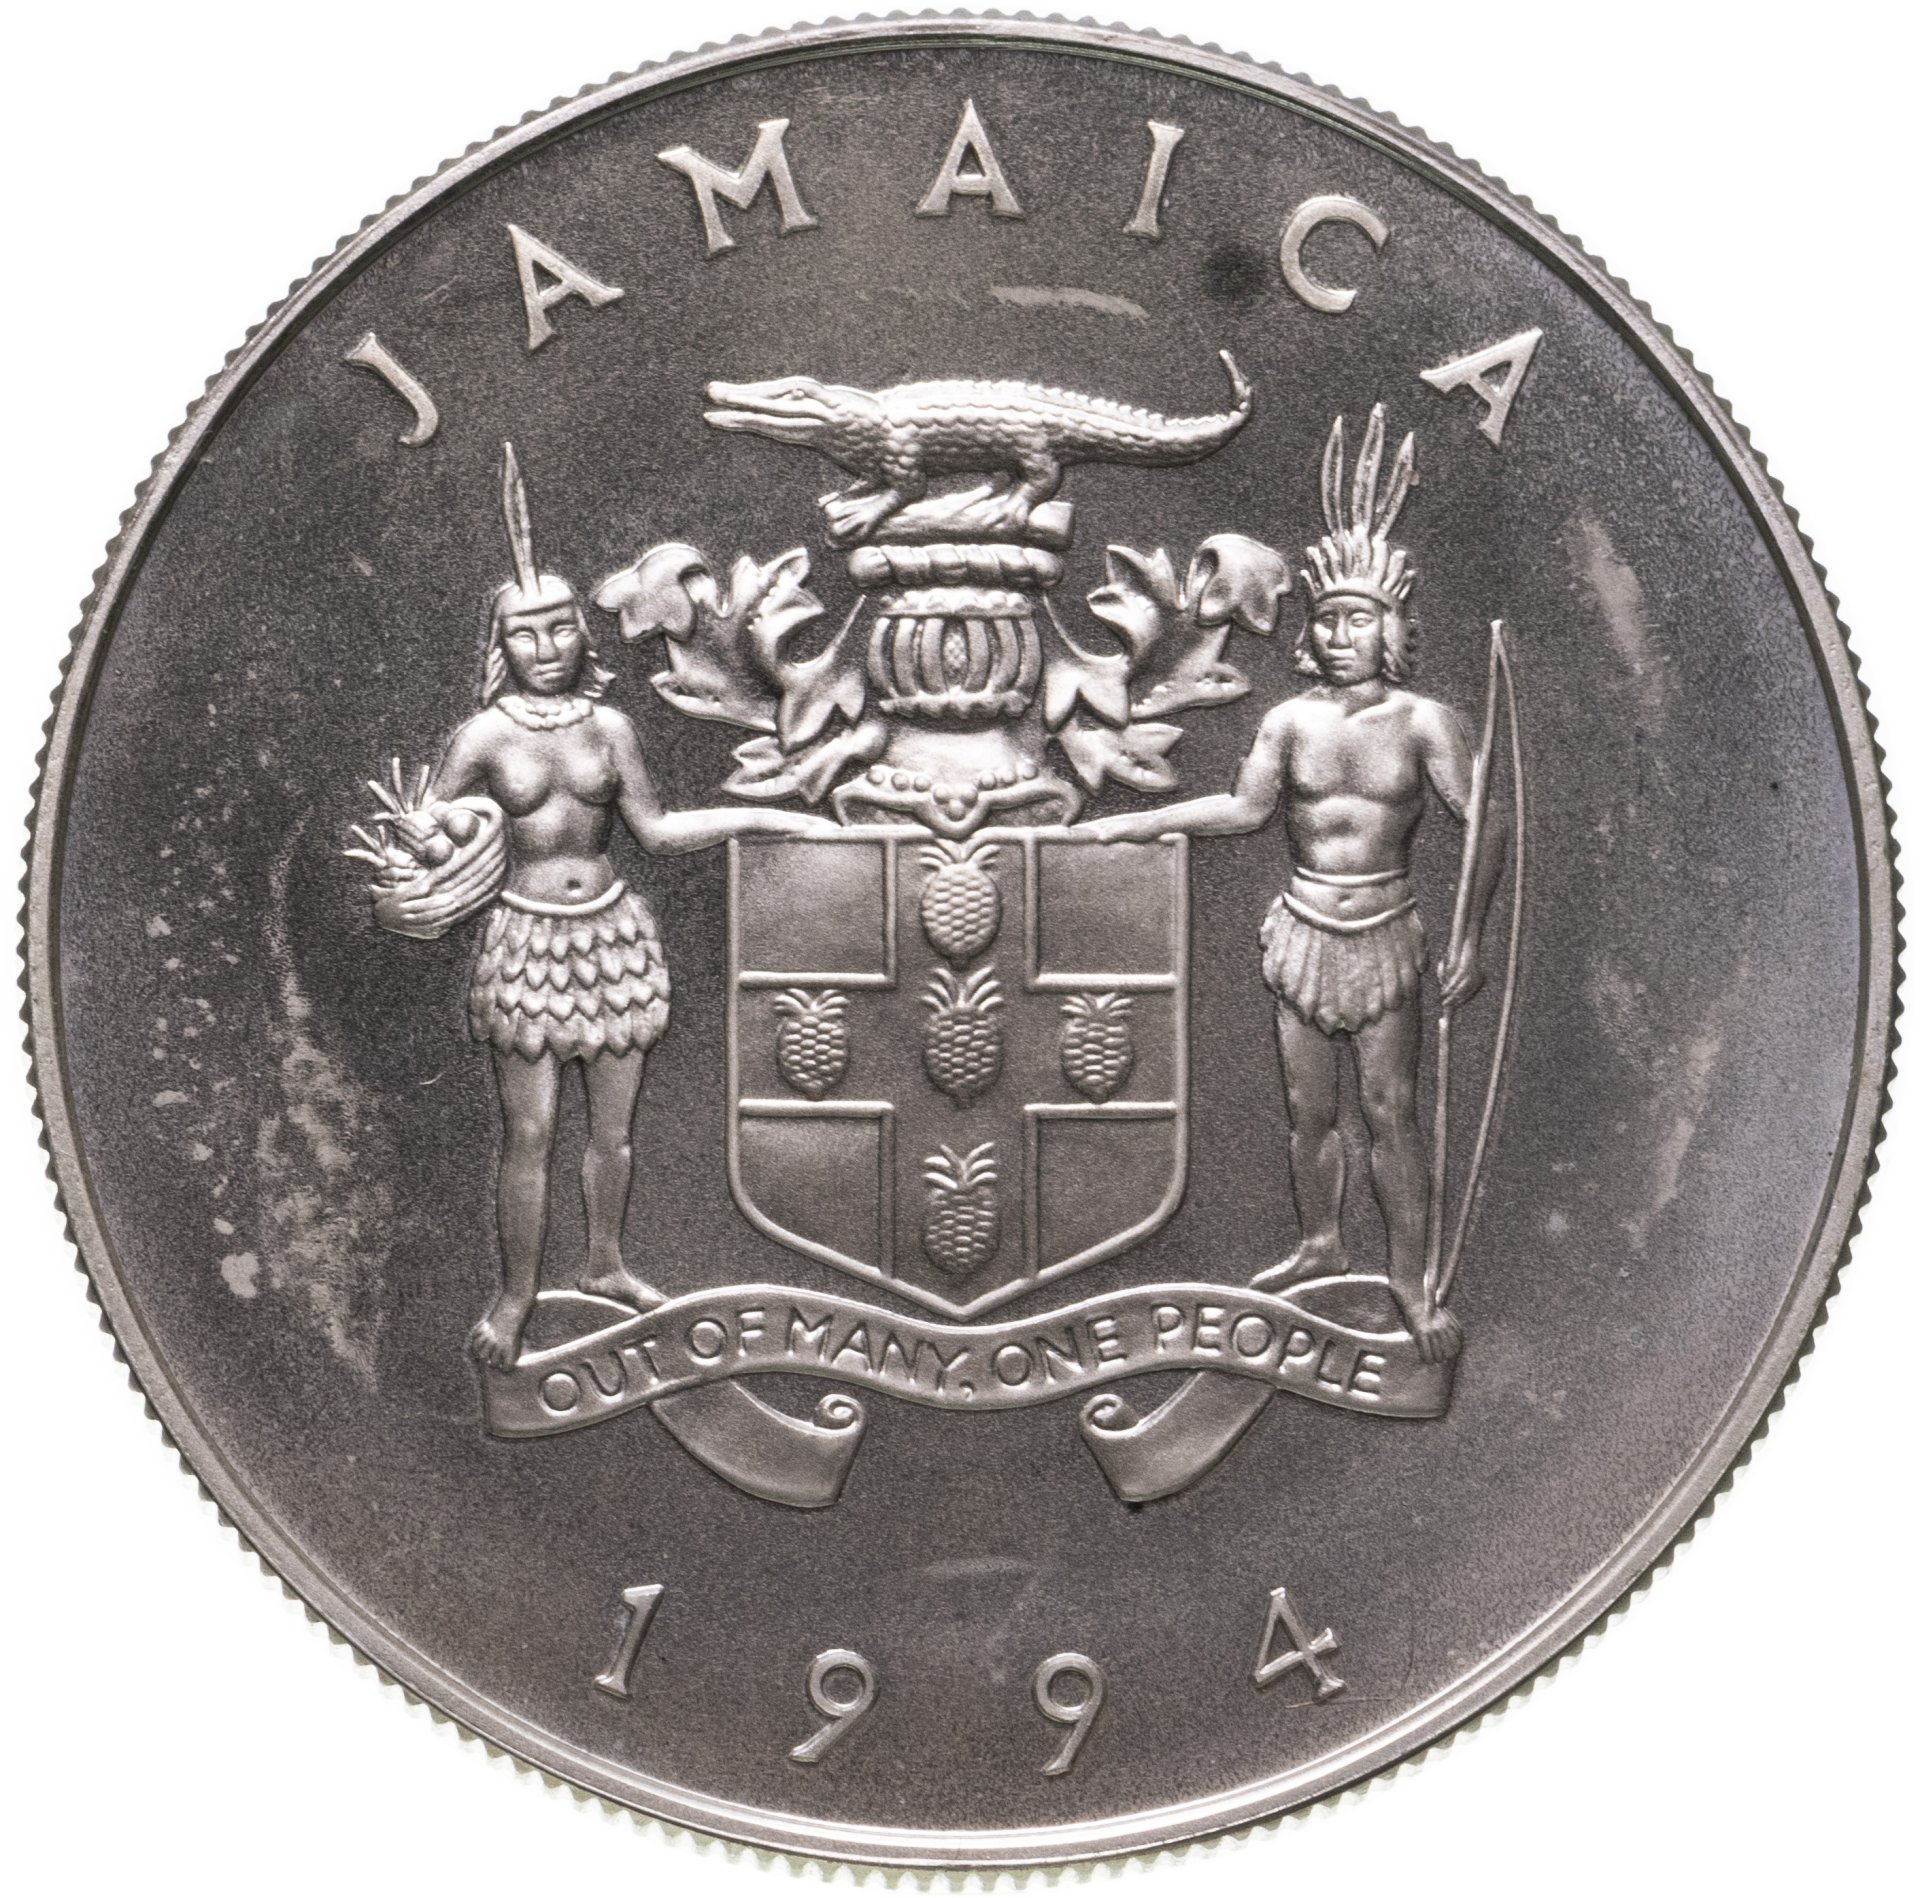 25 долларов в рублях в россии. Ямайка 5 долларов, 1994-2018. Науру 10 долларов 1994 Королева. Бермуды 2 доллара, 1994 морской конек.